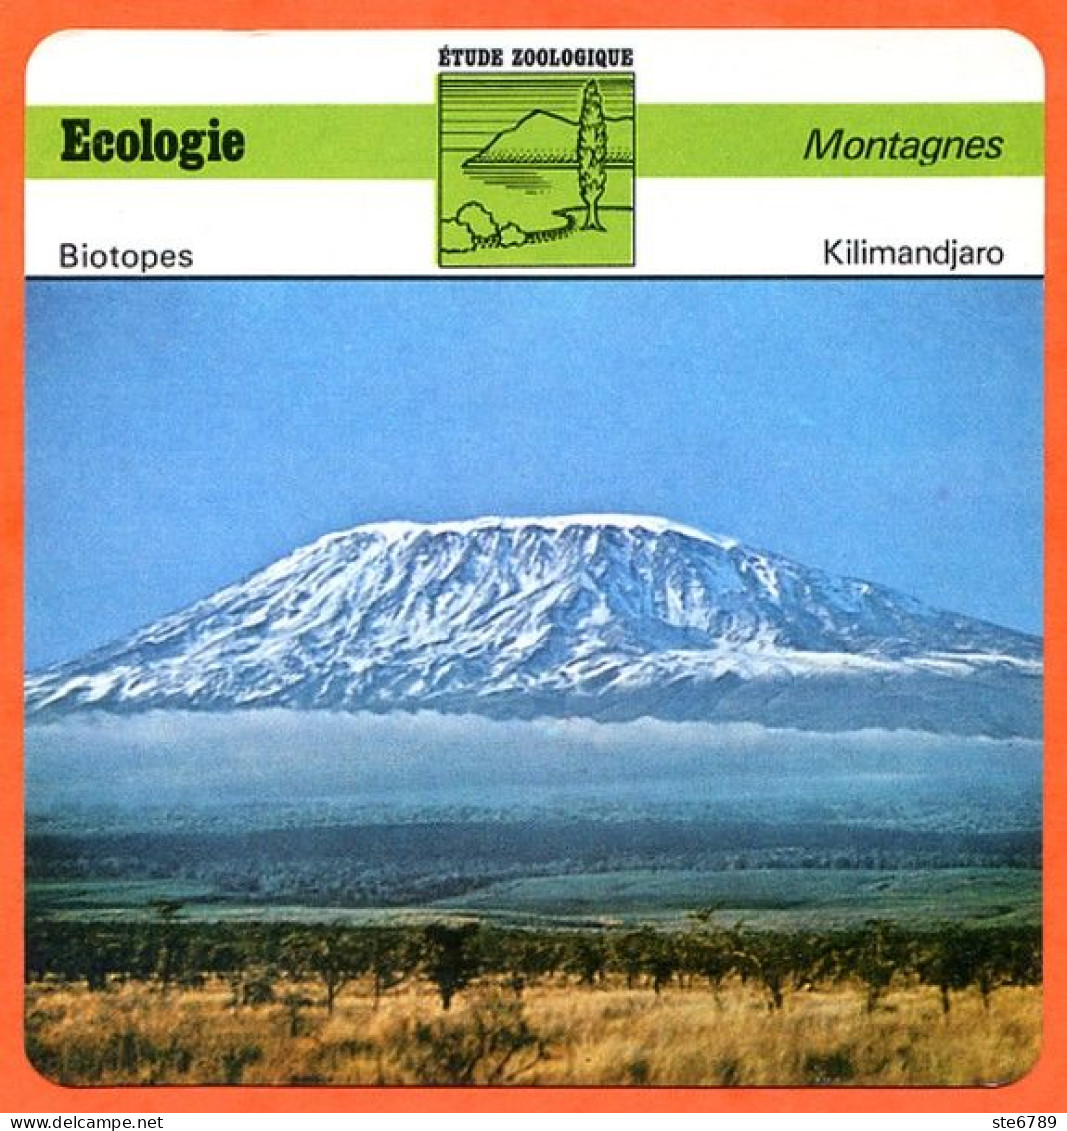 Fiche Ecologie Kilimandjaro  Montagnes Etude Zoologique Biotopes - Géographie